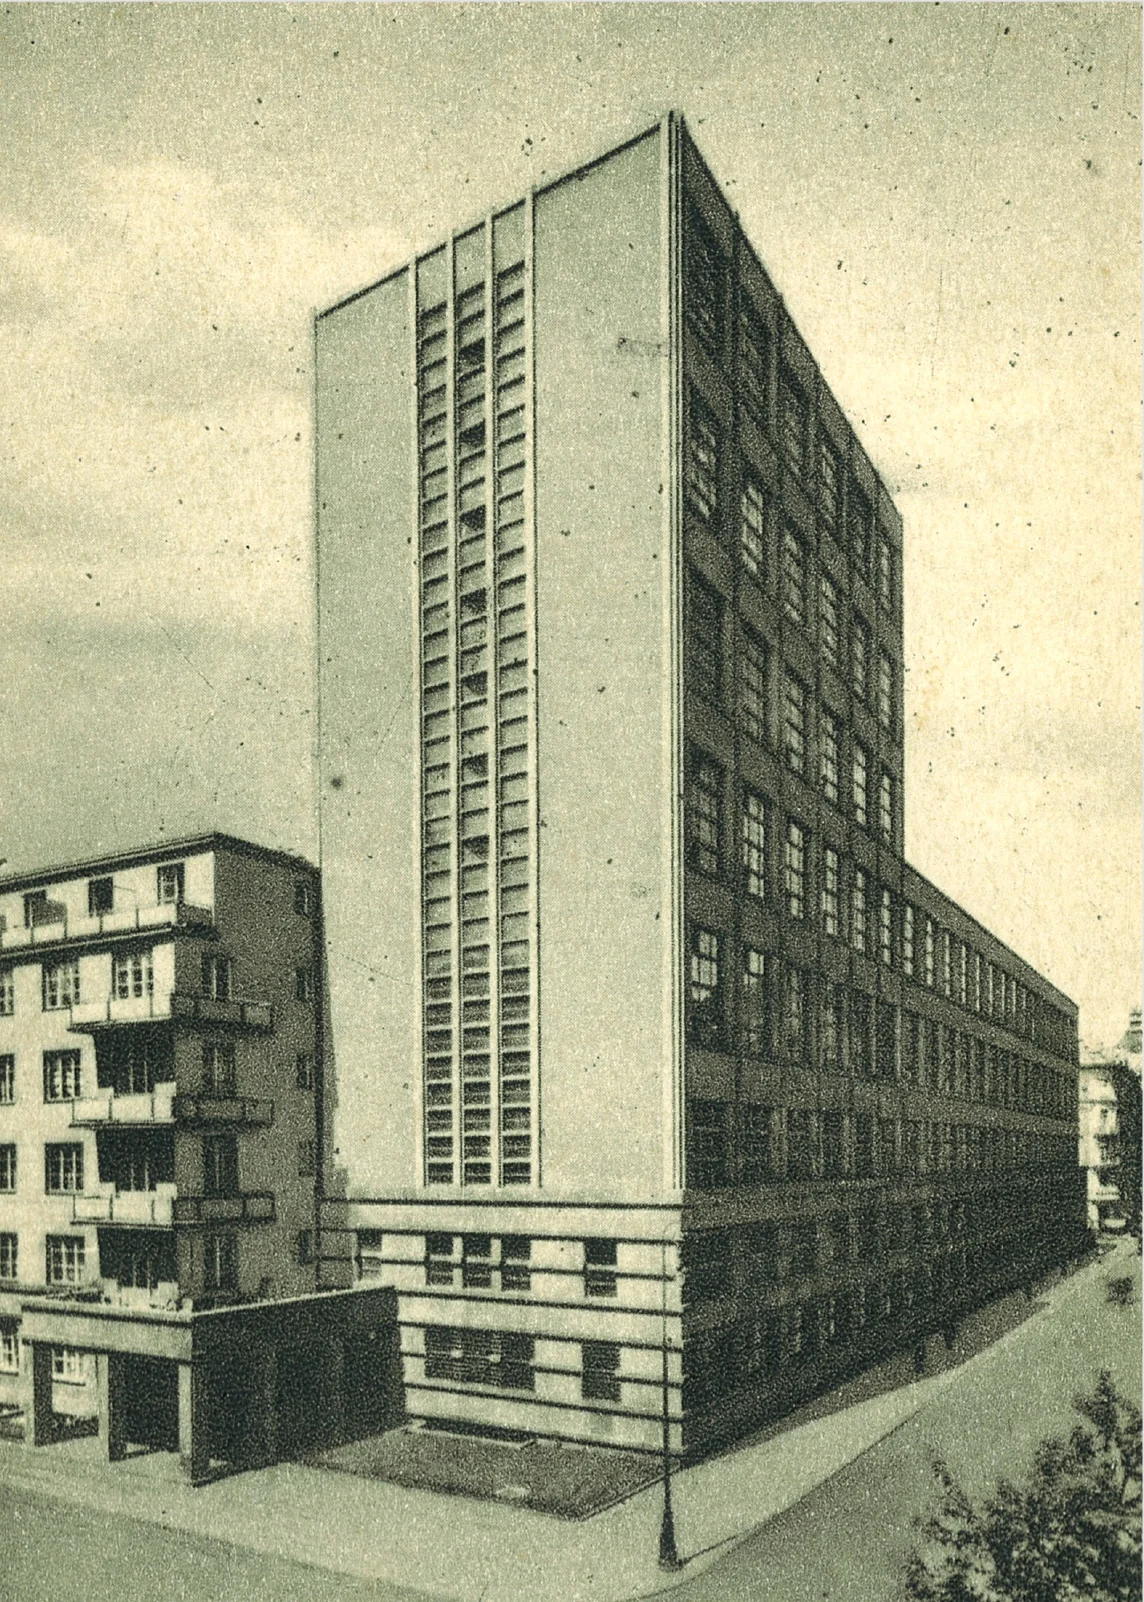 Gmach Urzędu Telekomunikacyjnego i Telegraficznego przy ul. Nowogrodzkiej 45 w Warszawie, 1934-1939. Autor: Henryk Poddębski, domena publiczna